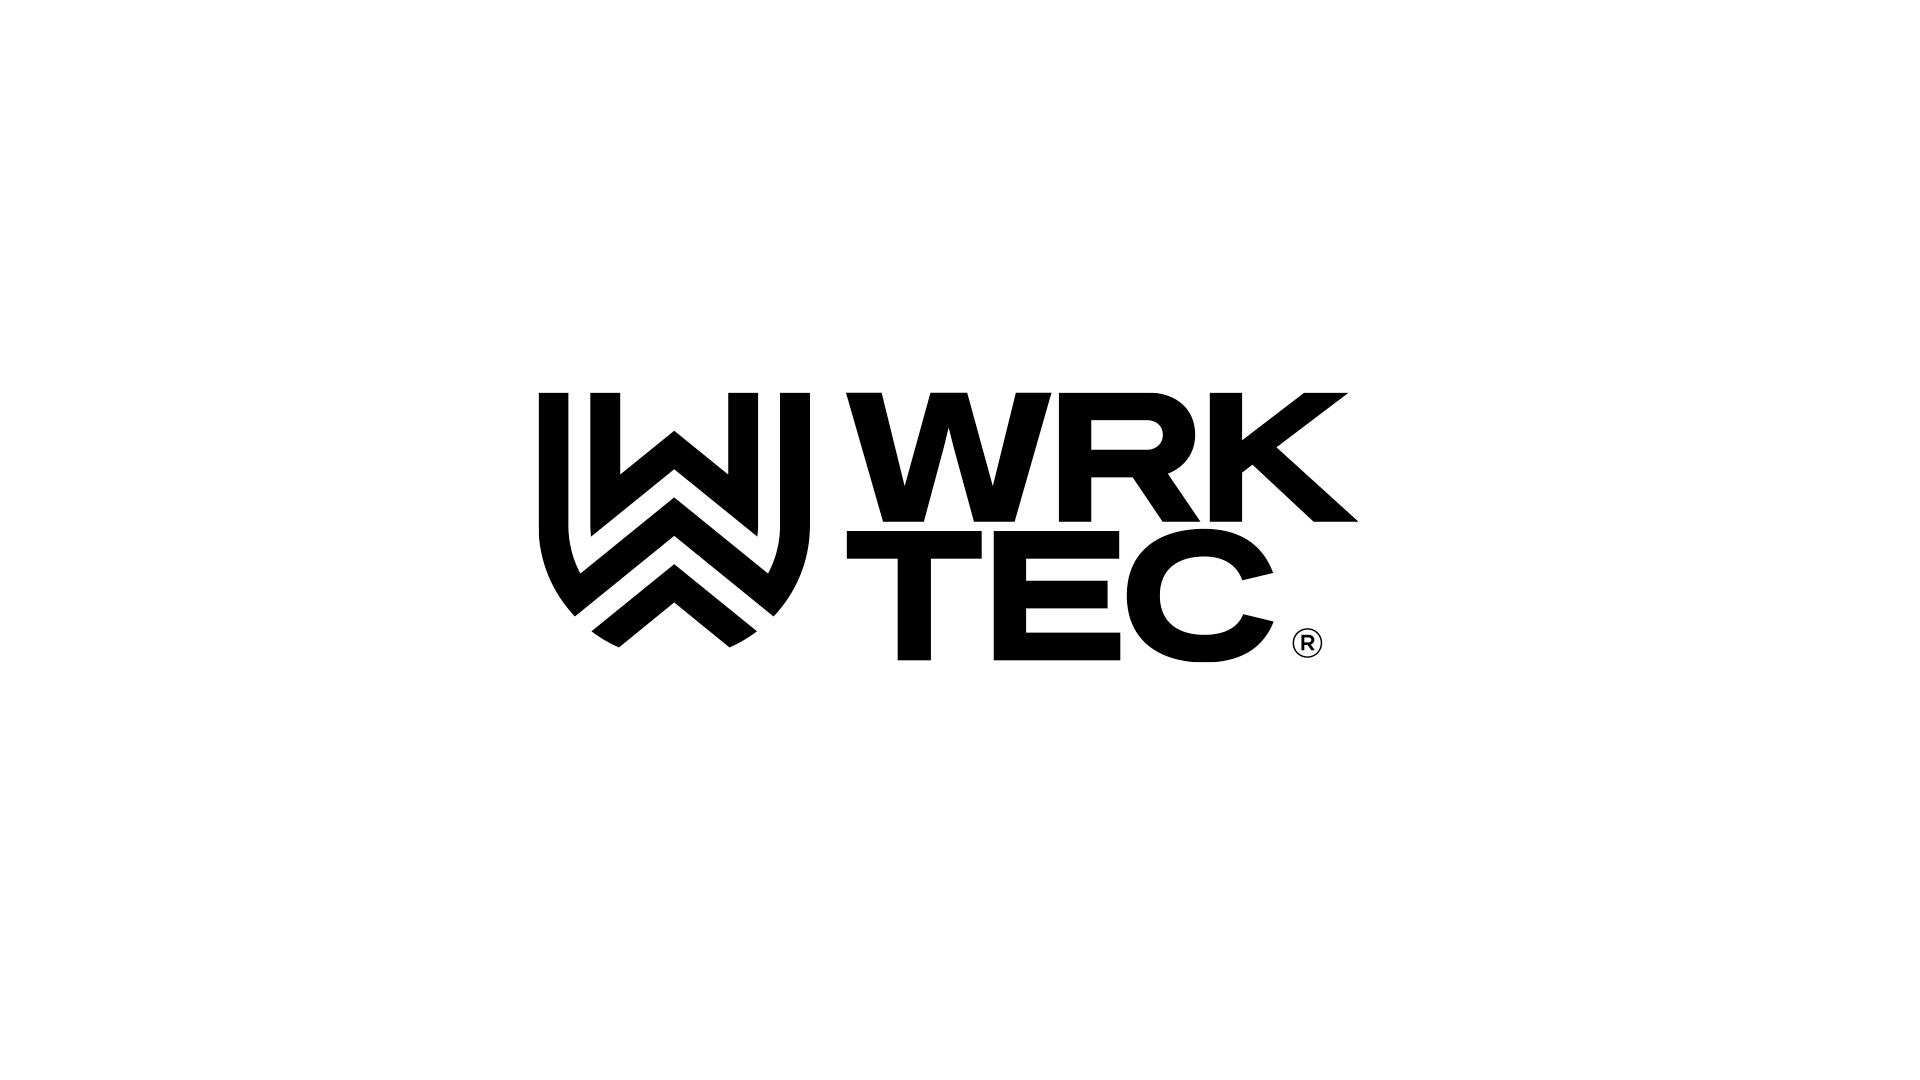 Robertstown-Wrktec-Logo-H